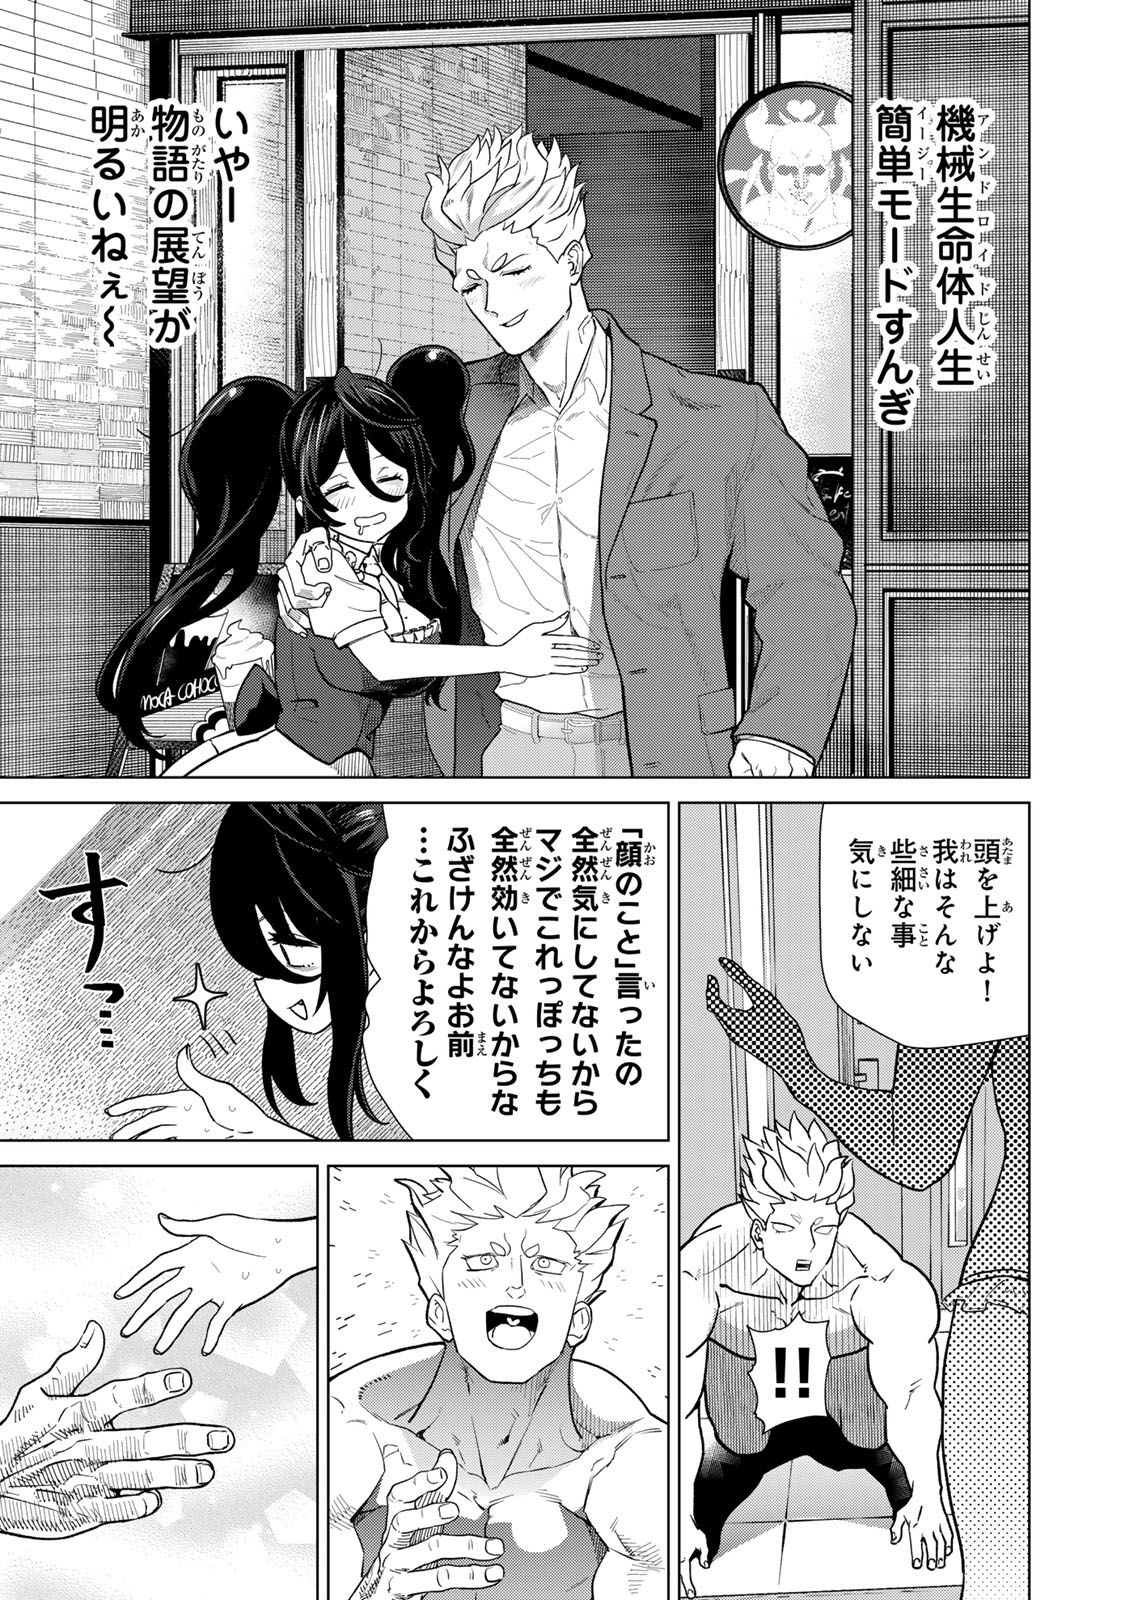 Yappa Ningen Yamete Seikai da wa - Chapter 3 - Page 23